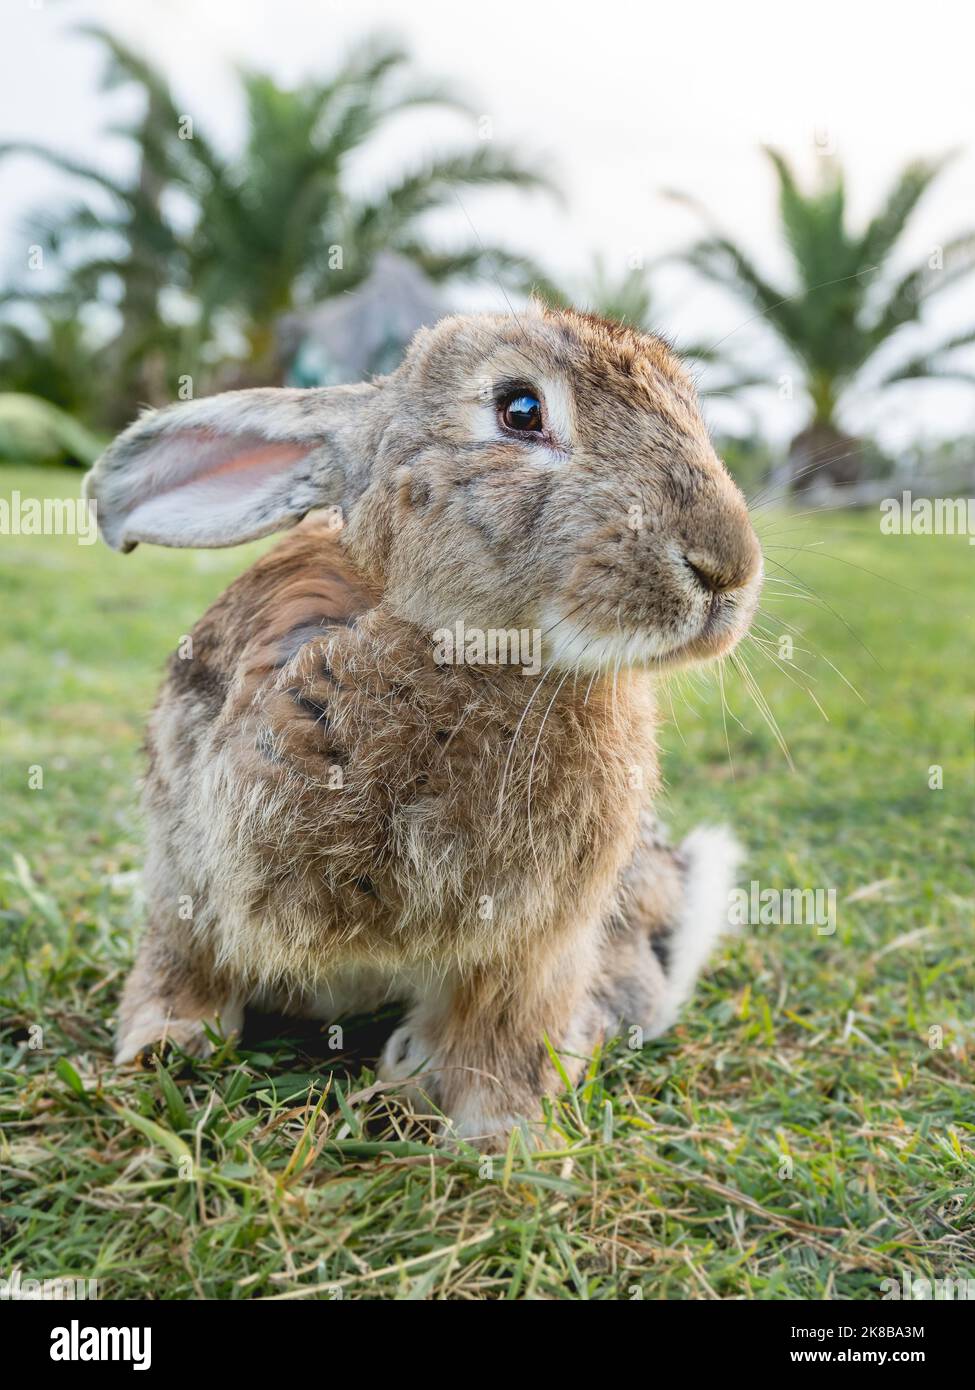 Porträt von niedlichen Hasen auf dem Rasen. Flauschiges Kaninchen auf grünem Gras starrt in die Kamera. Nutztiere weiden auf dem Feld im Freien. Stockfoto